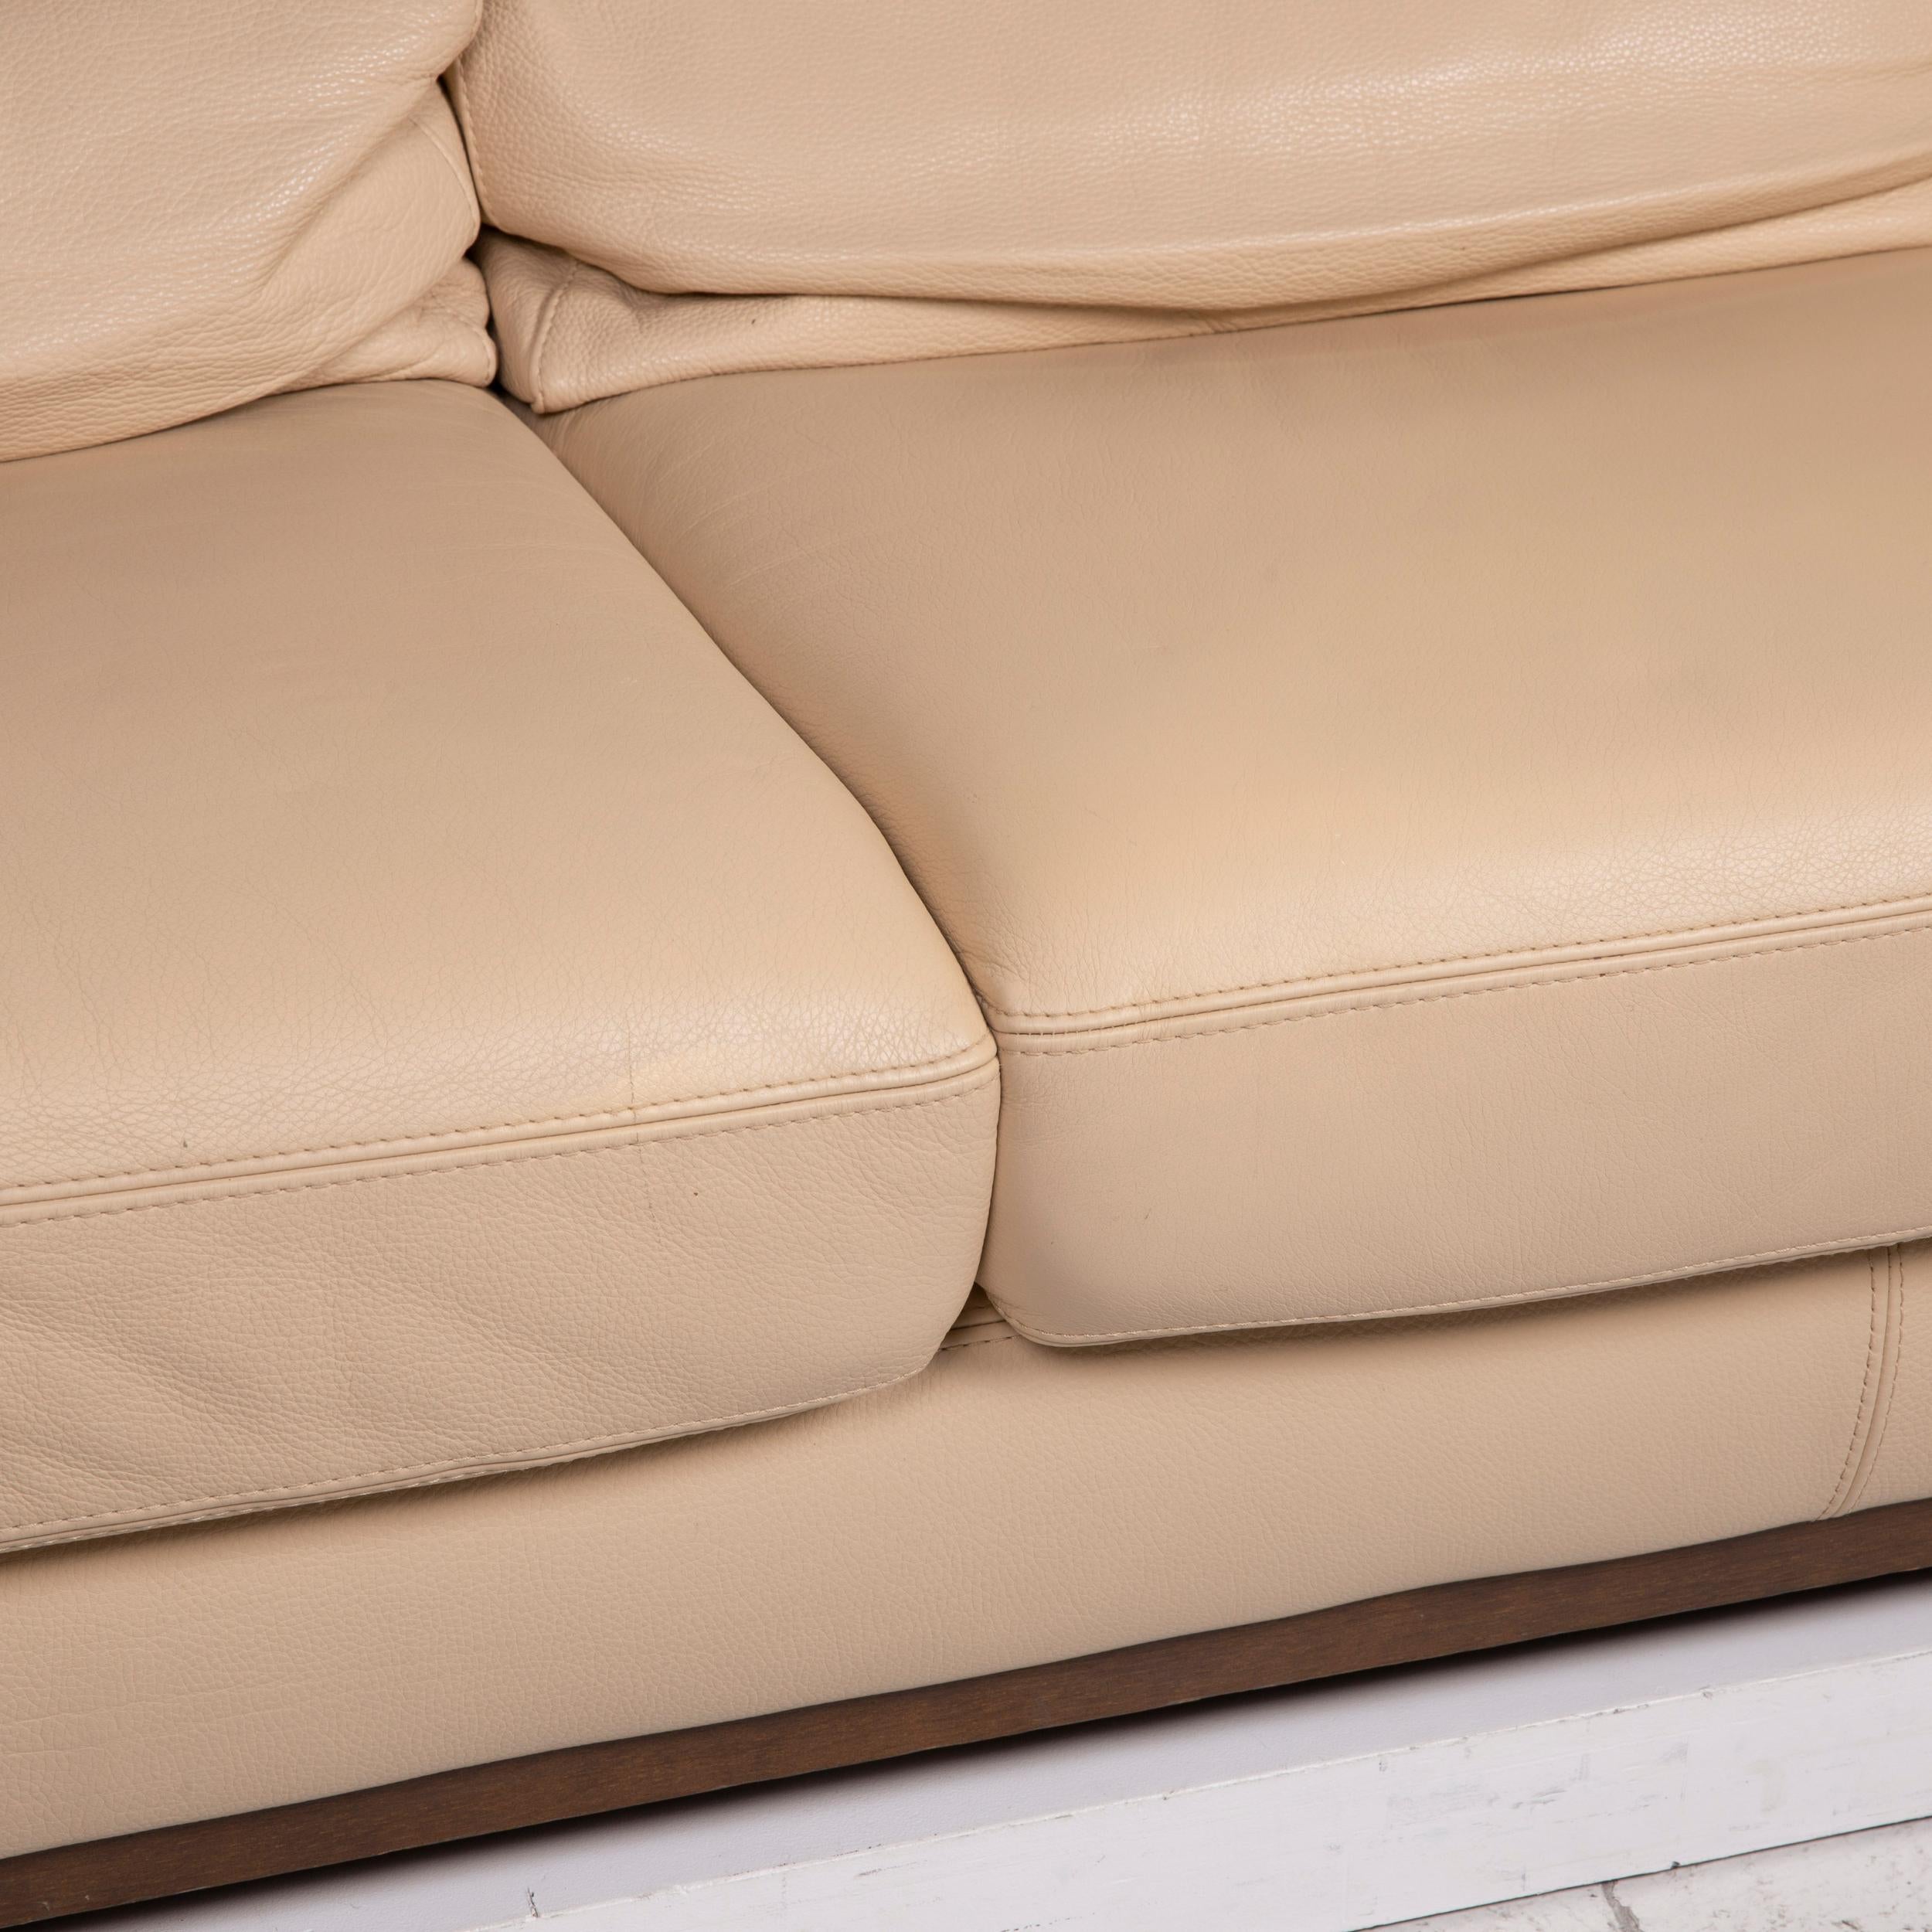 natuzzi leather sofa